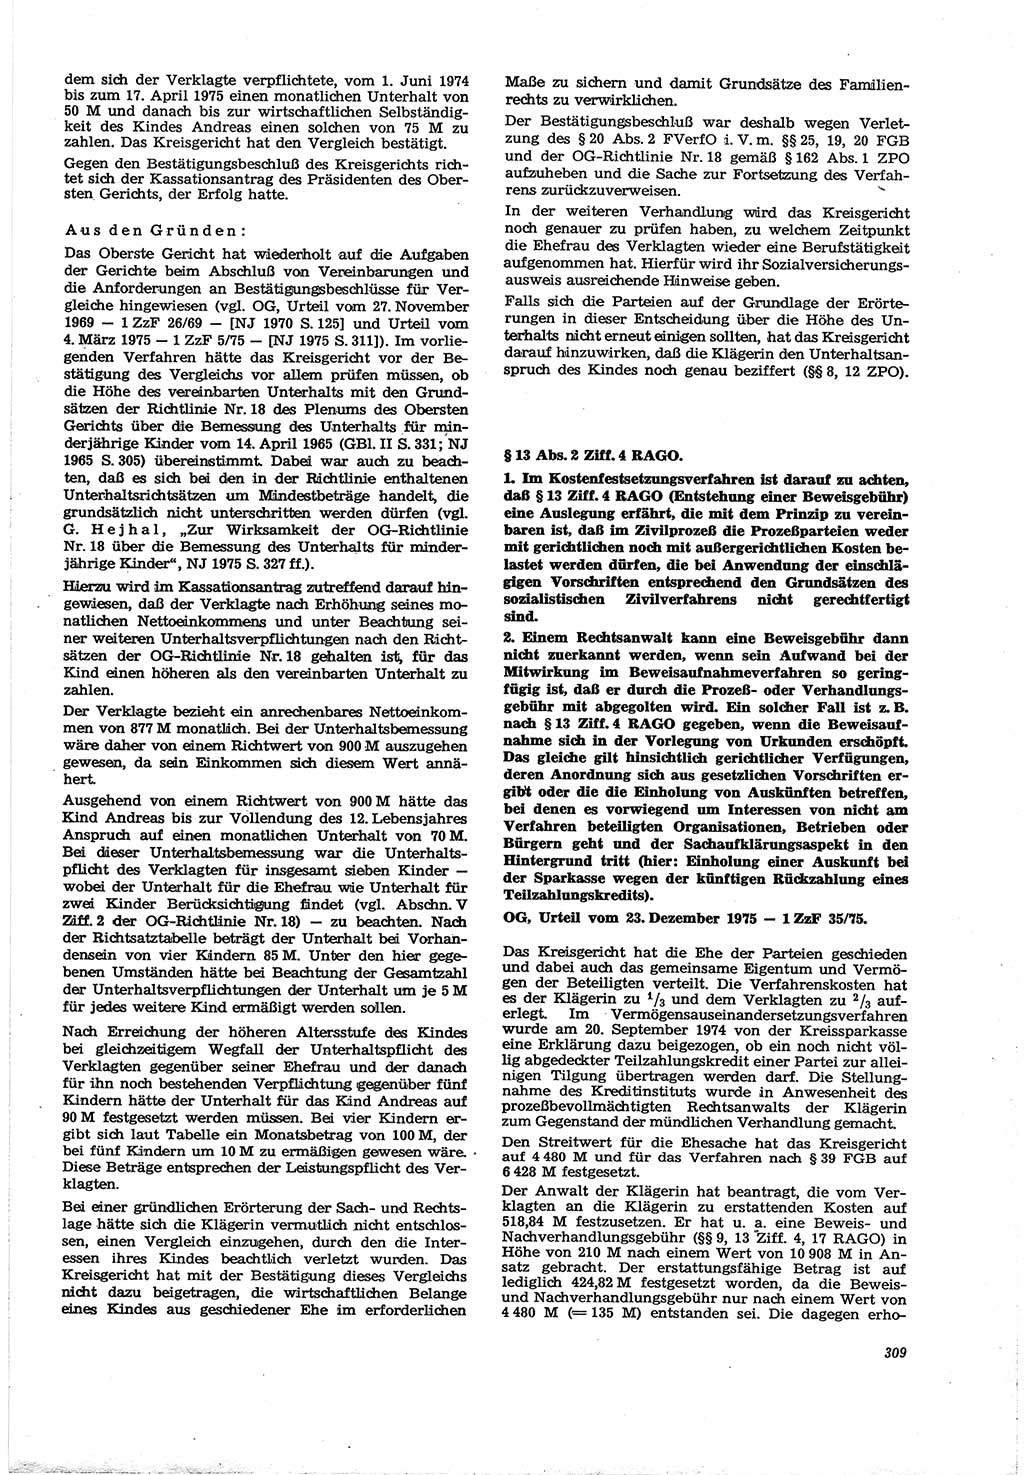 Neue Justiz (NJ), Zeitschrift für Recht und Rechtswissenschaft [Deutsche Demokratische Republik (DDR)], 30. Jahrgang 1976, Seite 309 (NJ DDR 1976, S. 309)